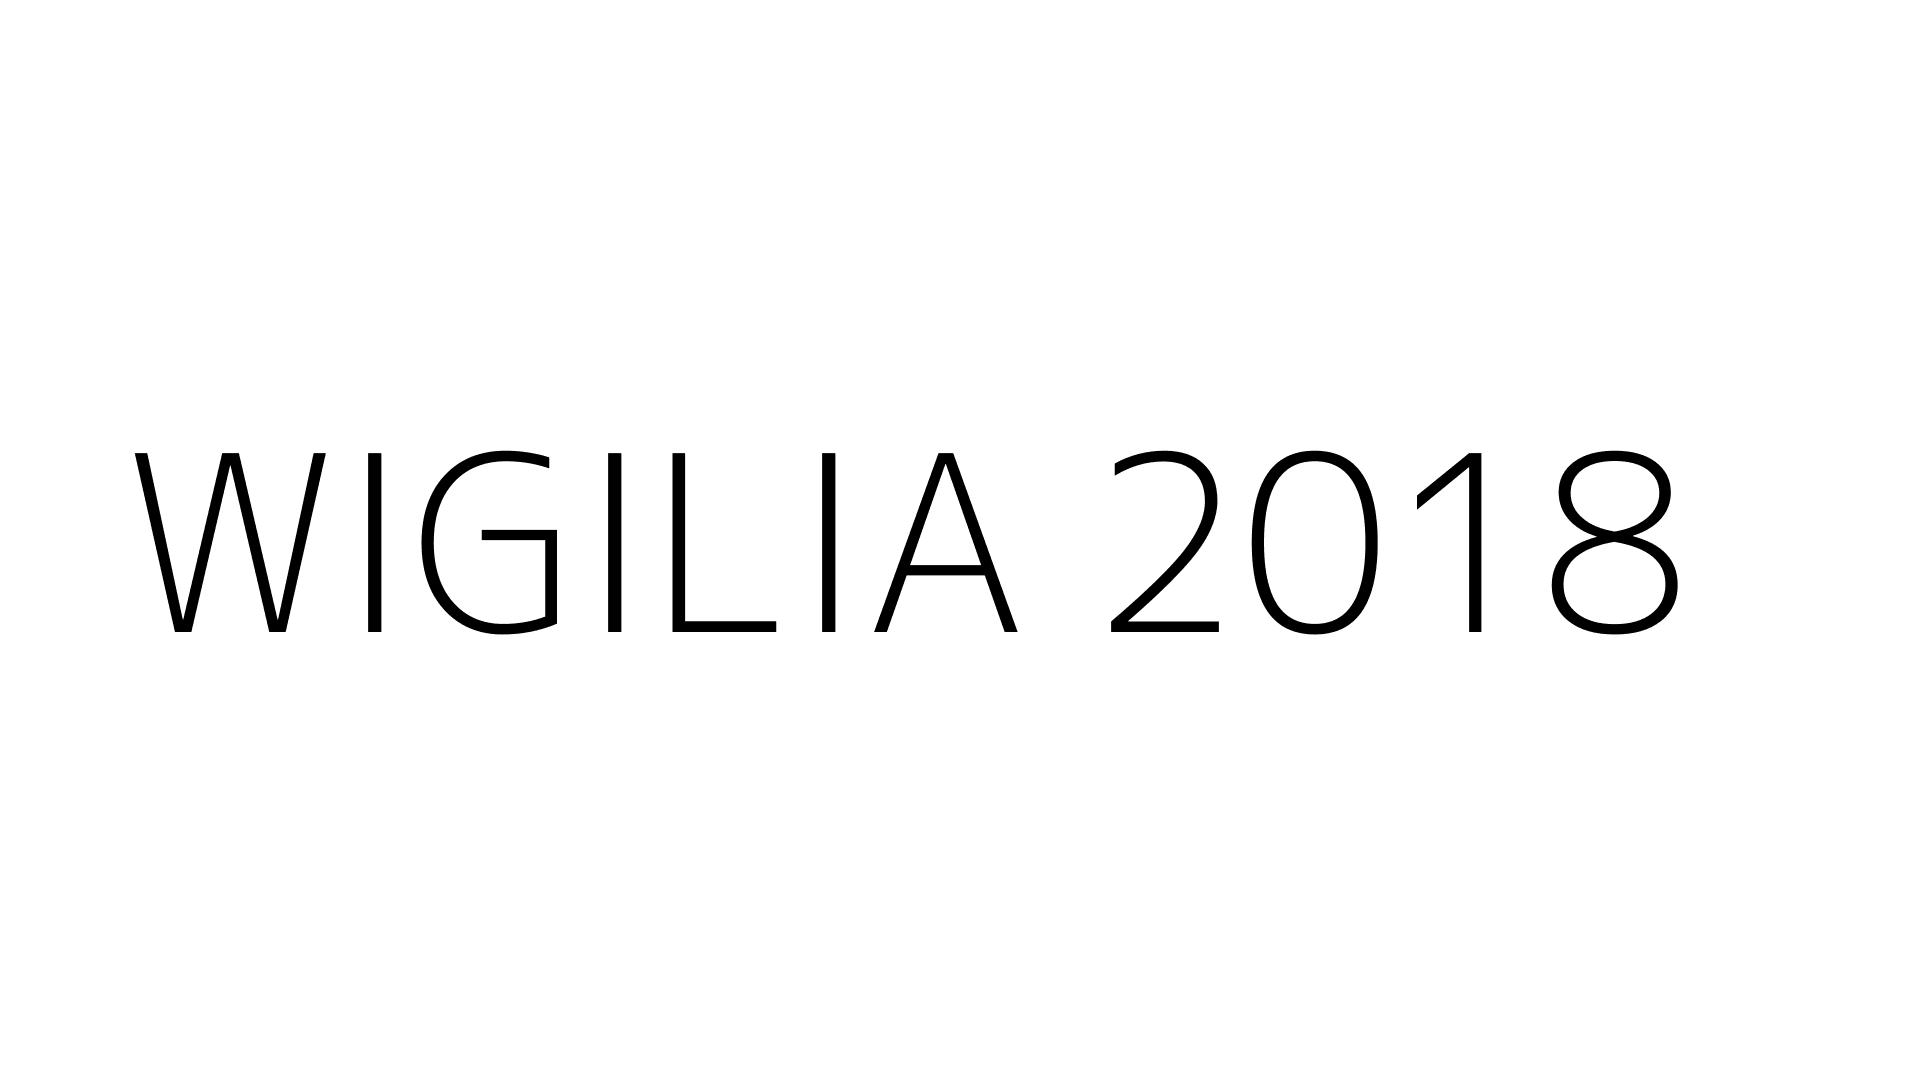 WIGILIA 2018